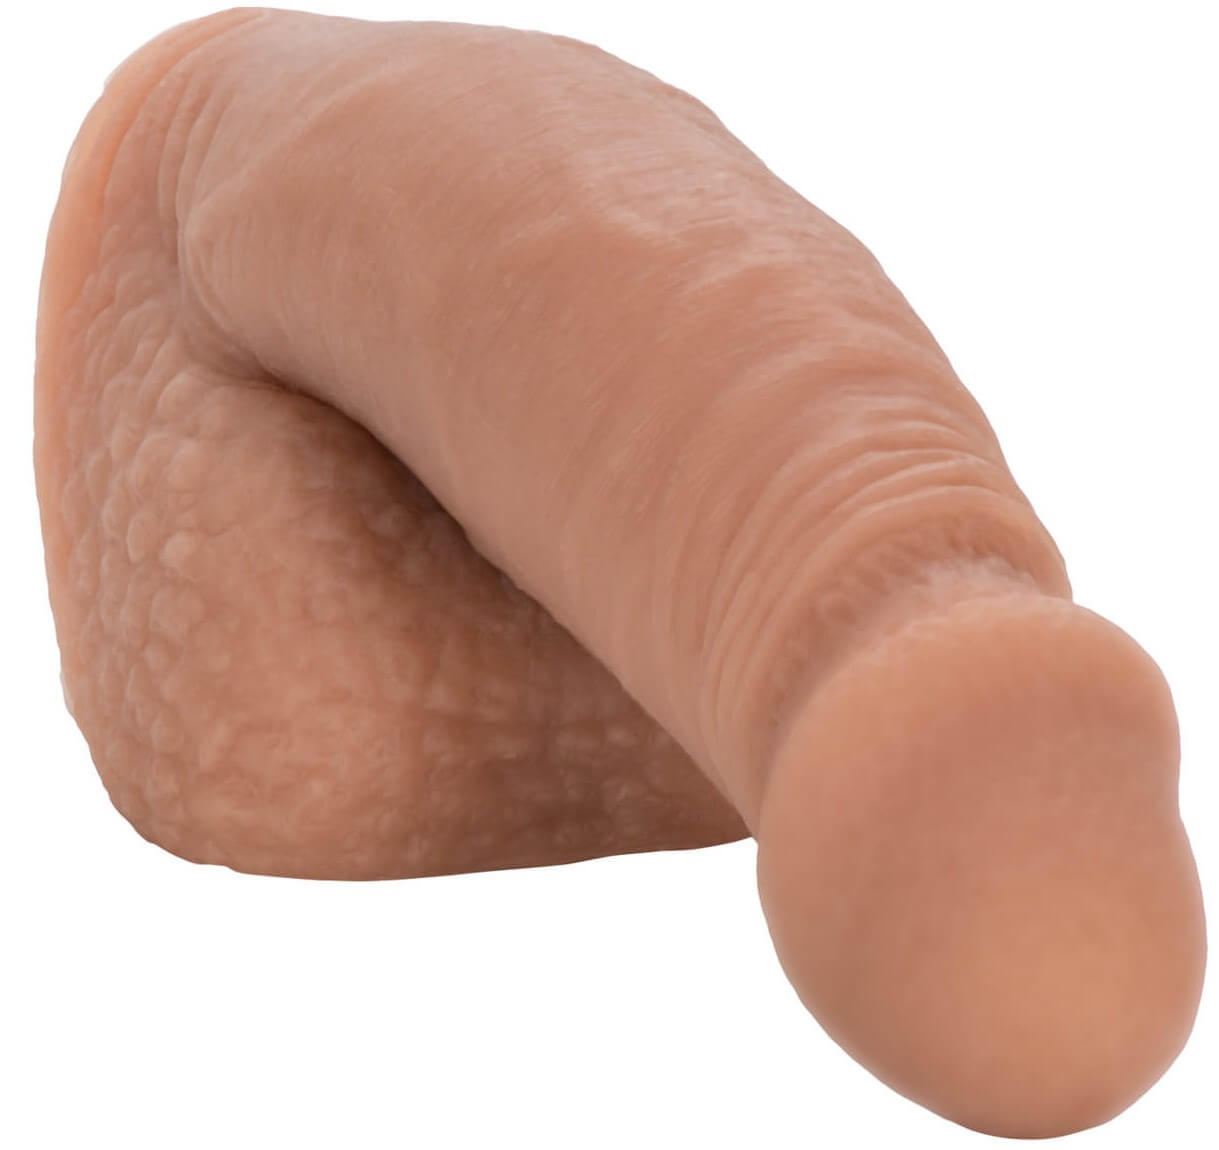 Falešný penis na vyplnění rozkroku 14,5 cm CALEX 5